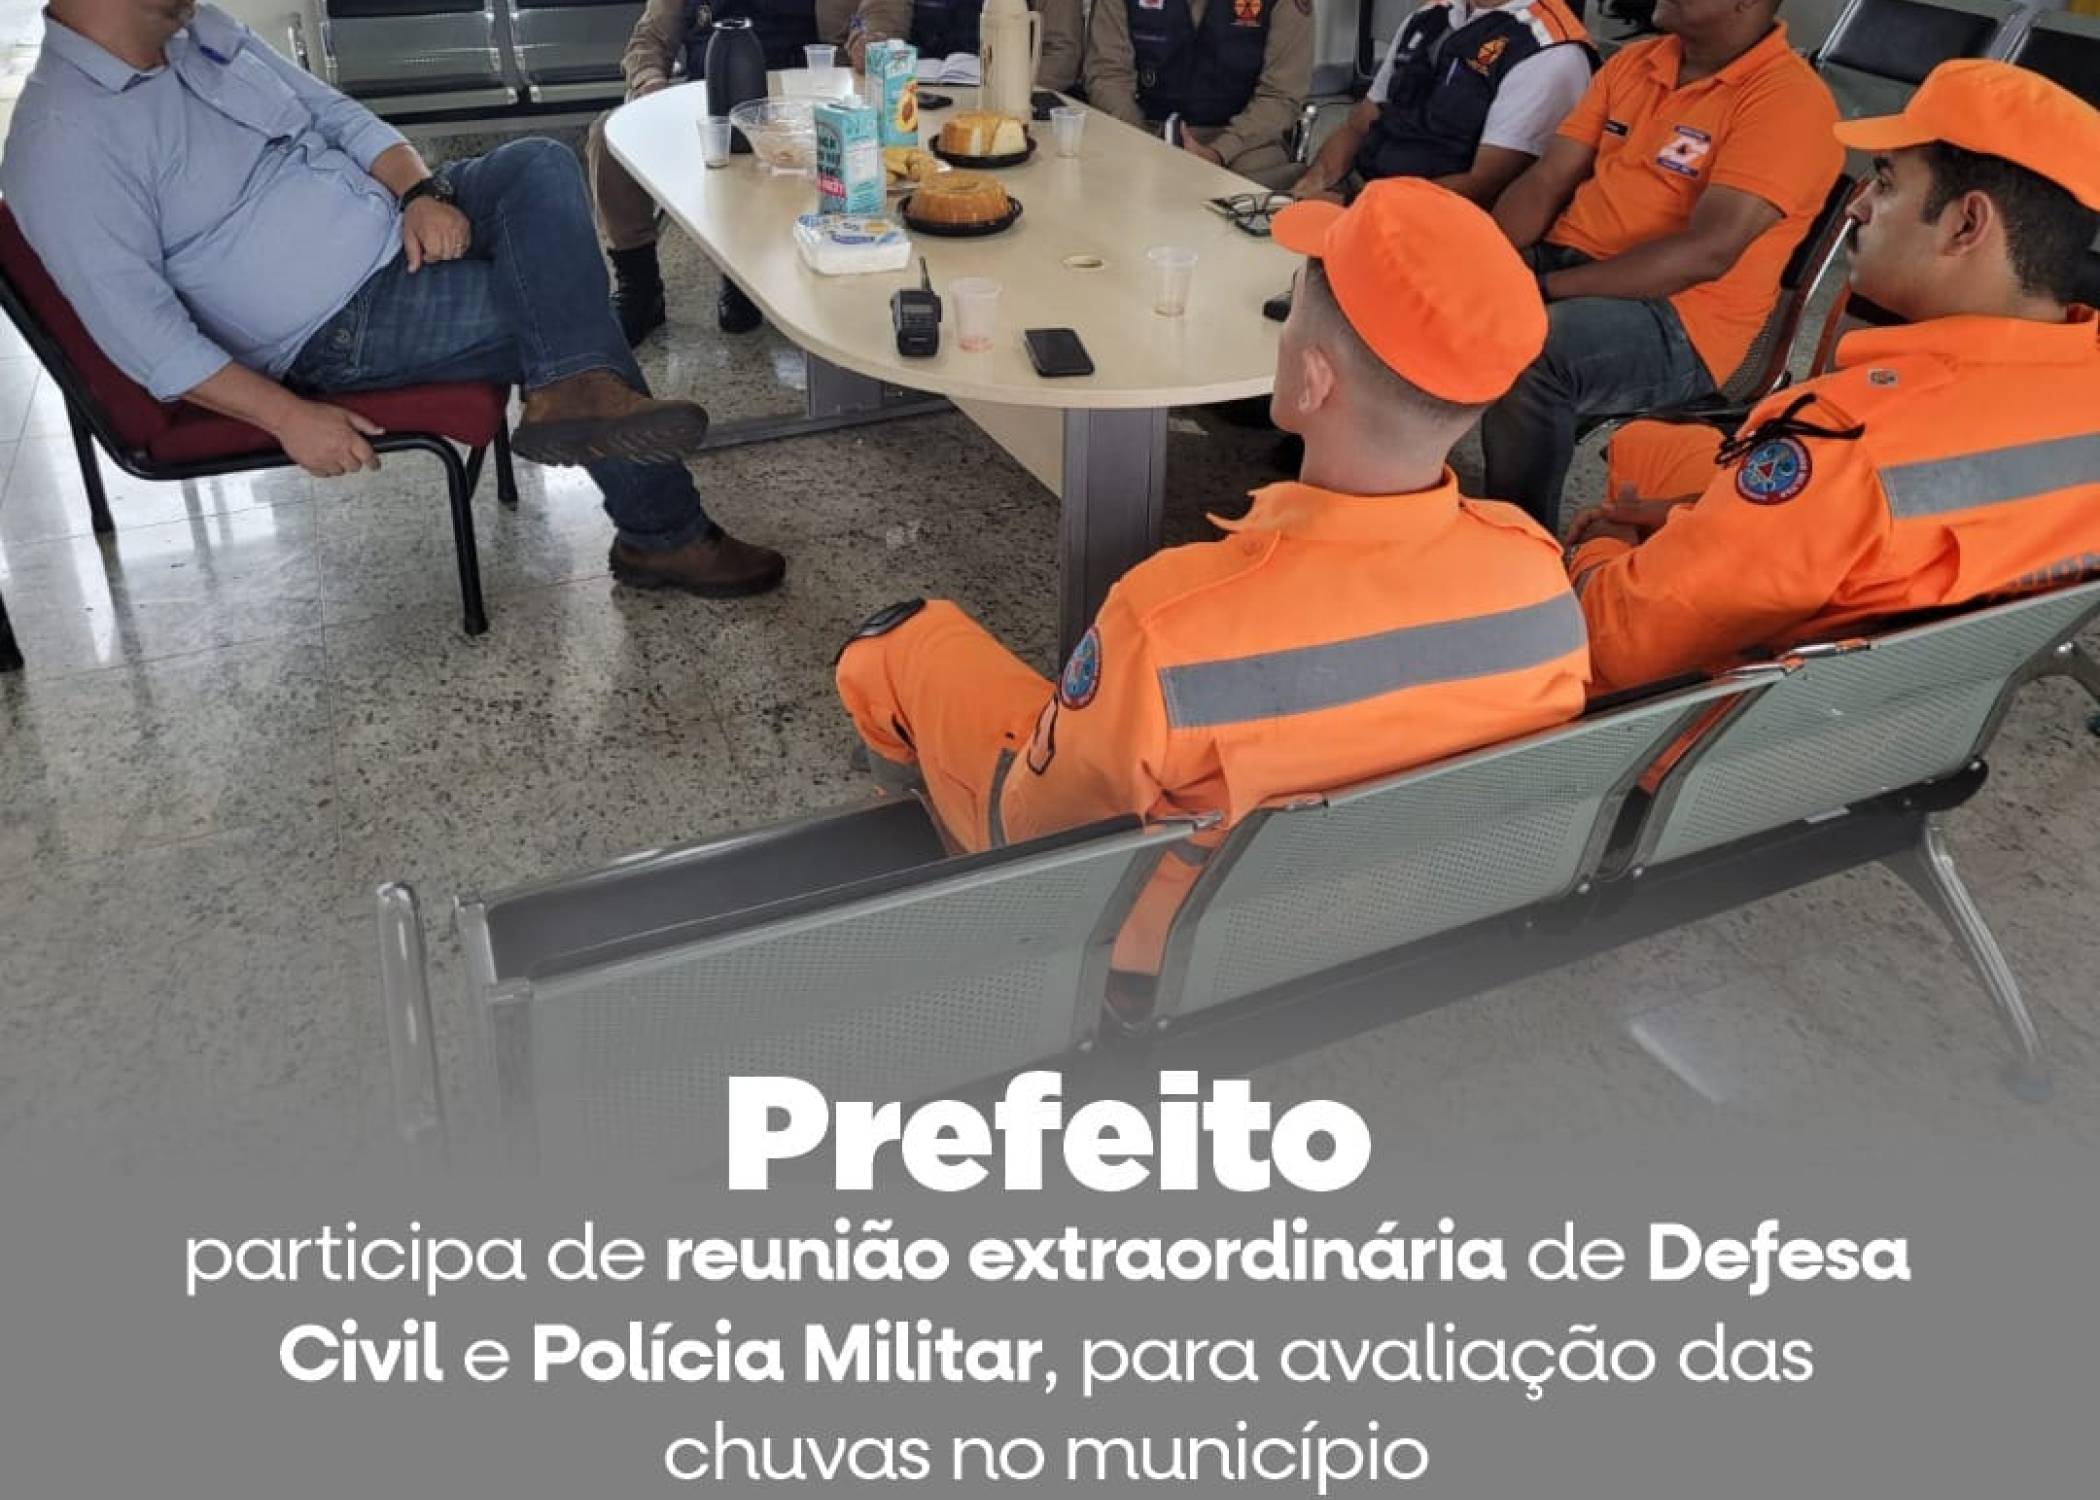 PREFEITO  PARTICIPA DE REUNIÃO EXTRAORDINARIA COM DEFESA CIVIL E POLÍCIA MILITAR, PARA AVALIAÇÃO DAS CHUVAS NO MUNICÍPIO